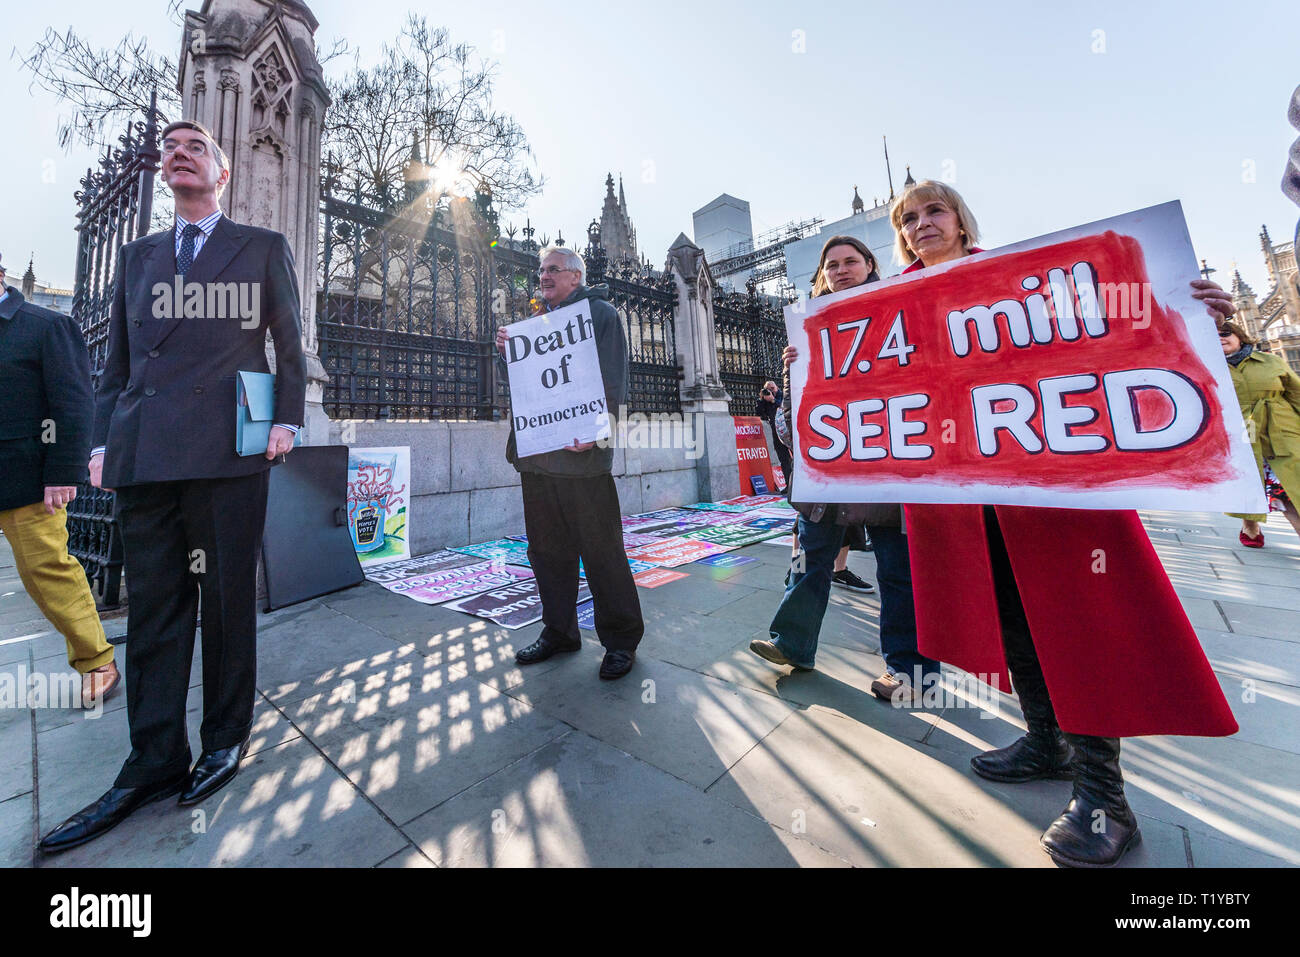 Der konservative Abgeordnete Jakob Rees-Mogg Ankunft im Palast von Westminster, London, Großbritannien. 29. März 2019, das Datum, an dem der britische gesehen haben sollte die EU die Debatte über eine Regierung Brexit Bewegung auf Genehmigung einer Rücknahme Vereinbarung. Die Demonstranten sind Anfang außerhalb zu sammeln Stockfoto